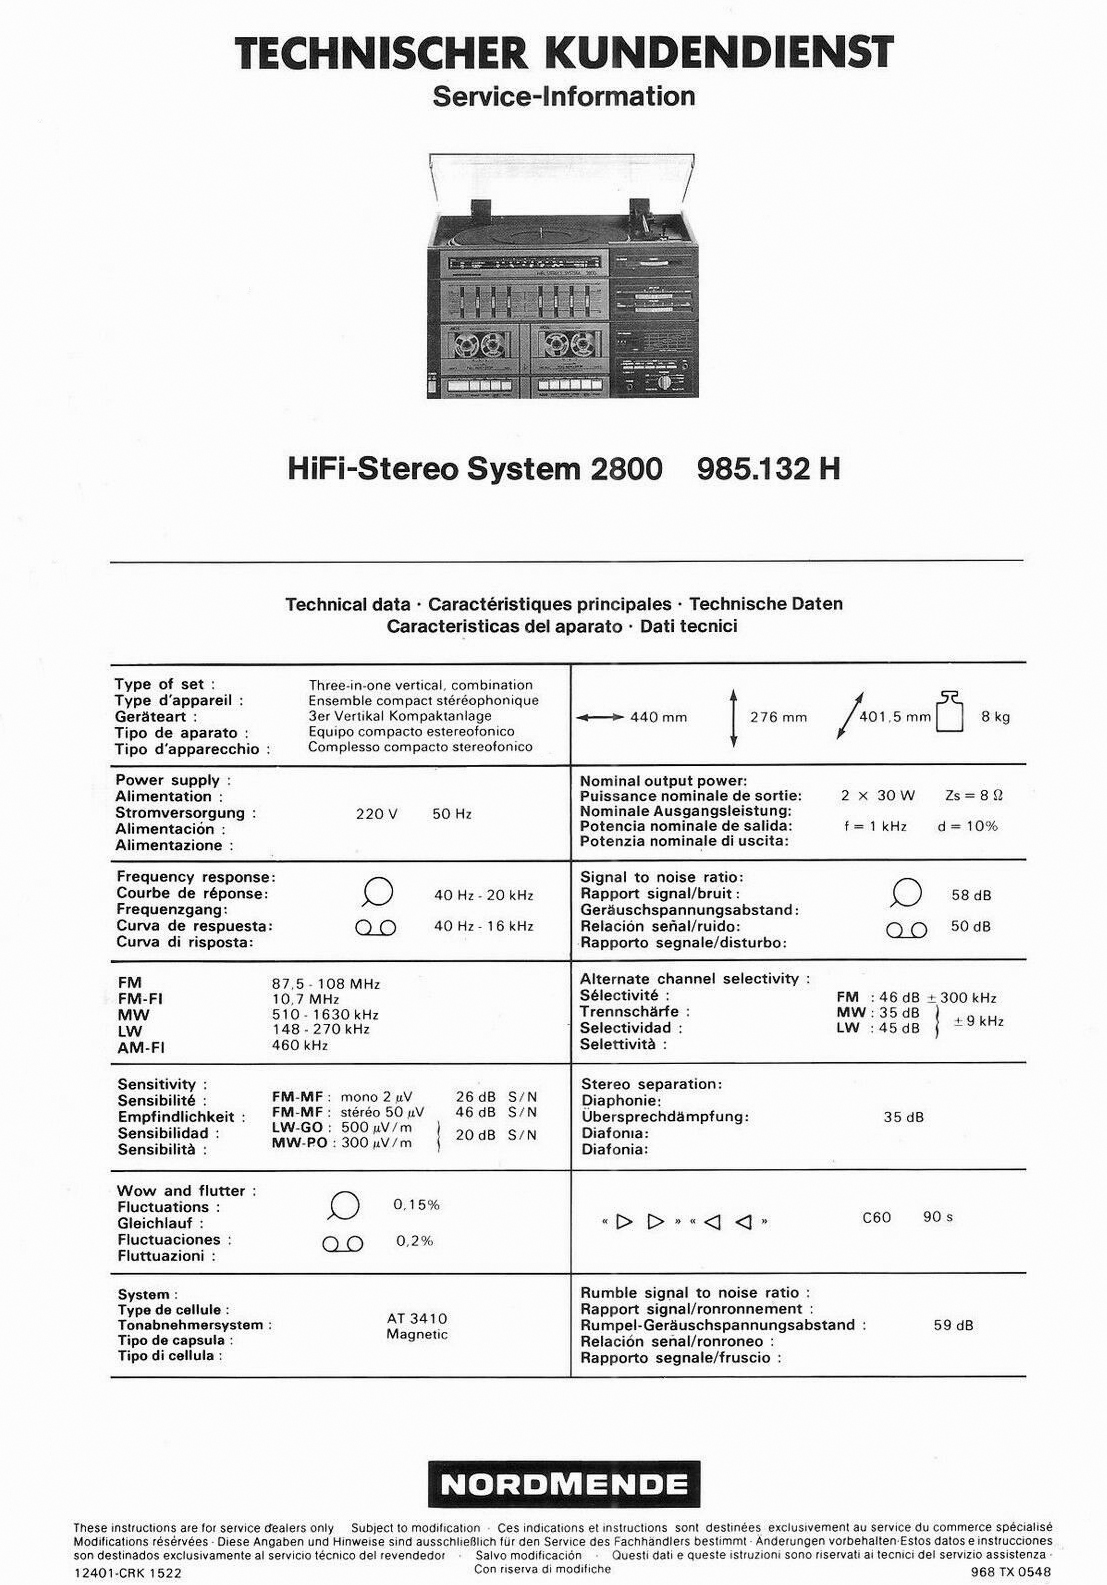 Nordmende Stereo System 2800-Daten-1984.jpg